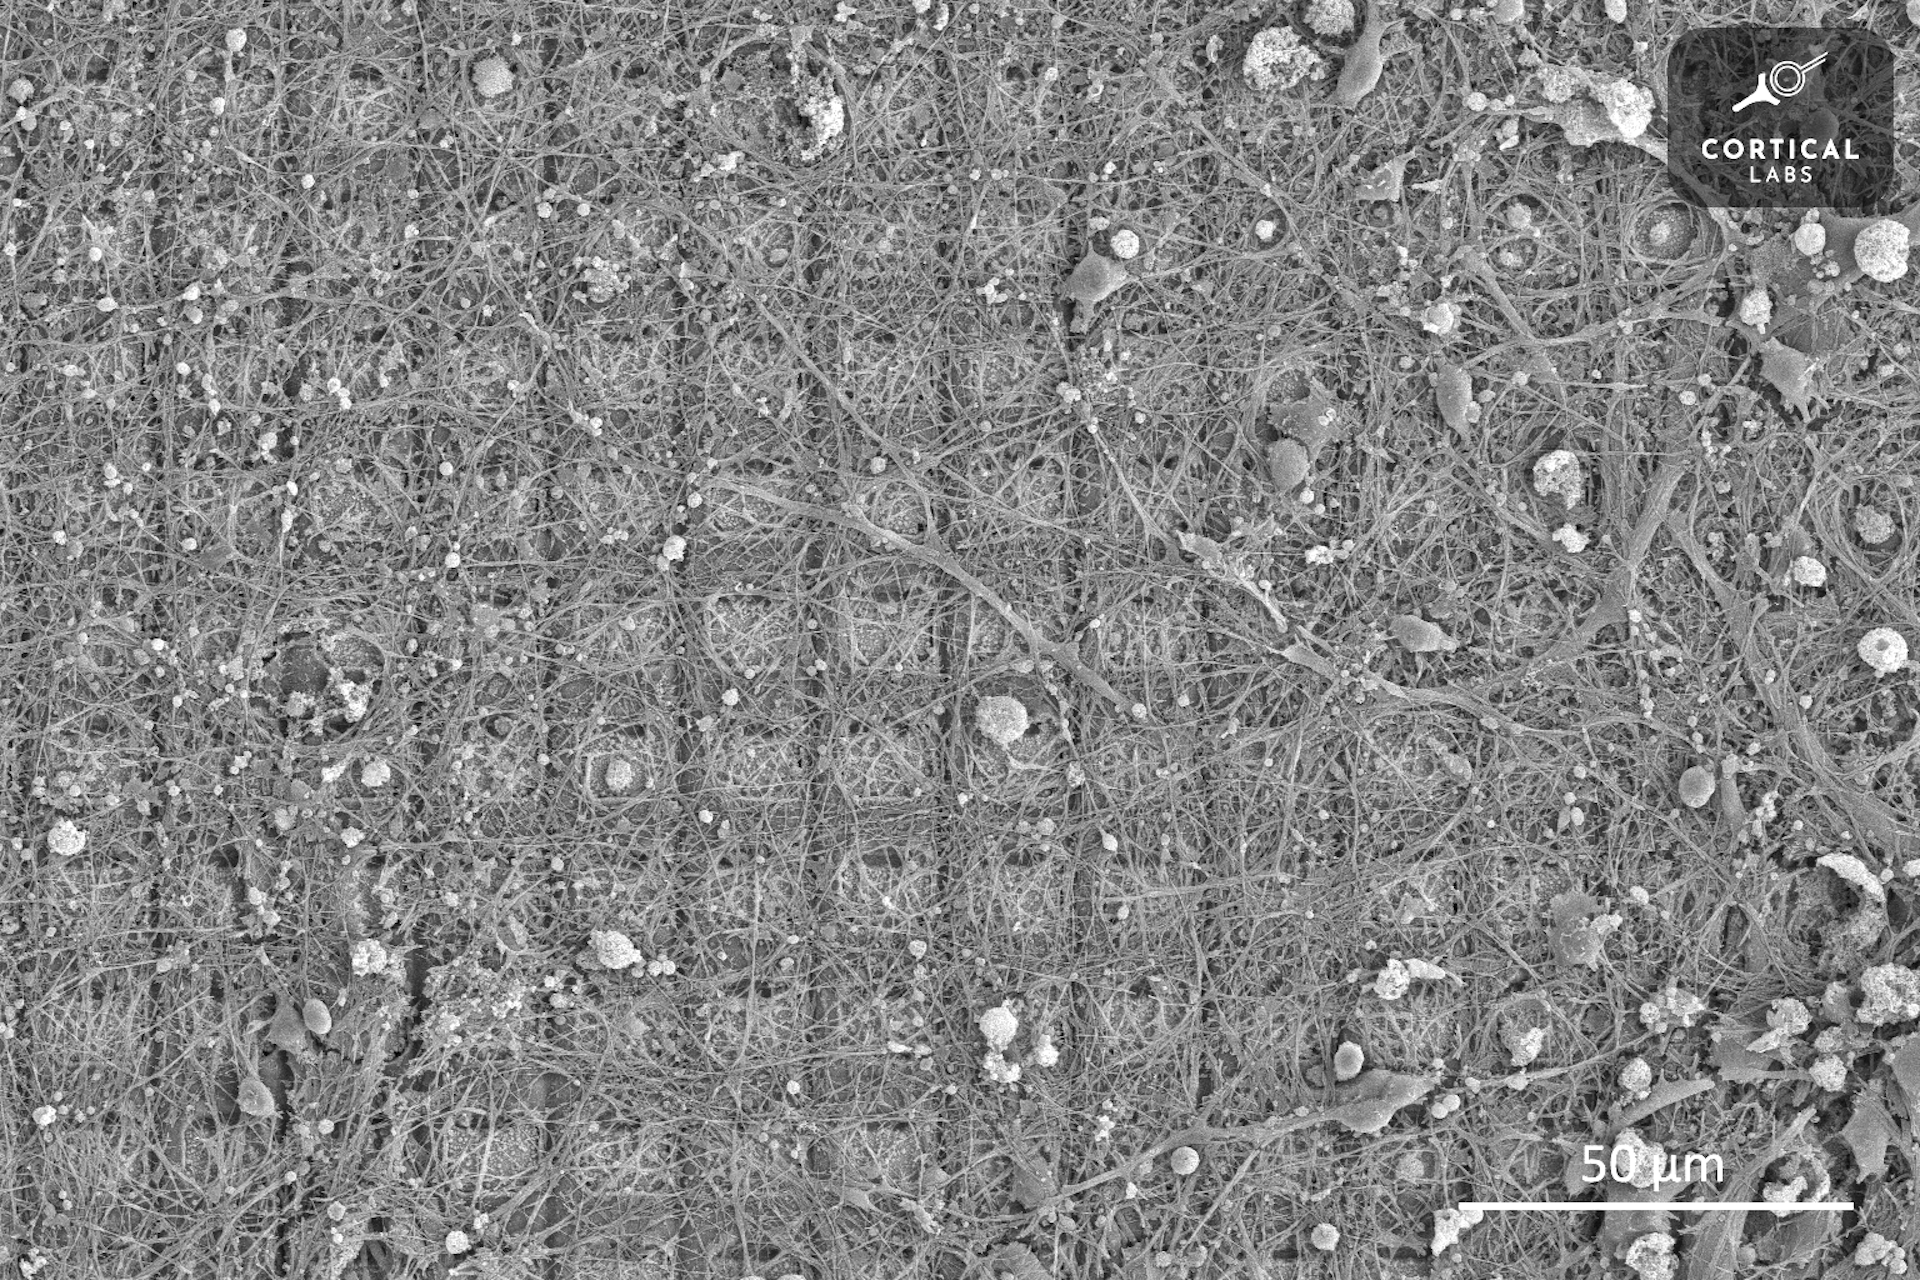 تُظهر الصورة المجهرية شبكة من المربعات المغطاة بنمو غير منتظم للخلايا العصبية الشبيهة بالخيط.